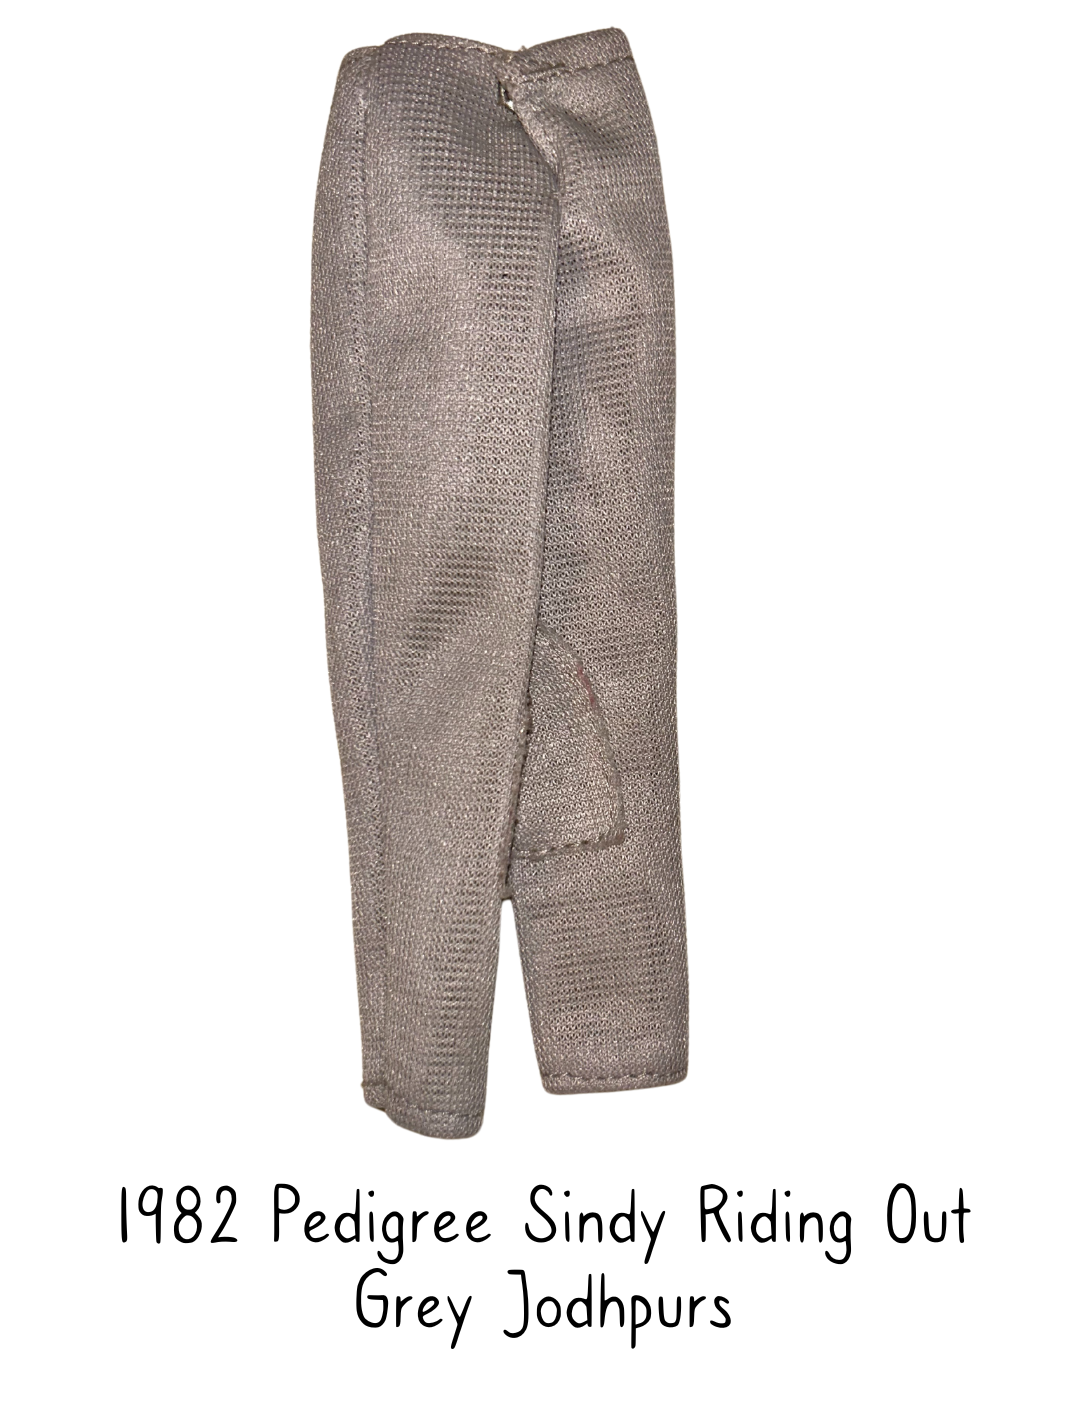 1982 Pedigree Riding Out Sindy Fashion Doll Grey Jodhpurs